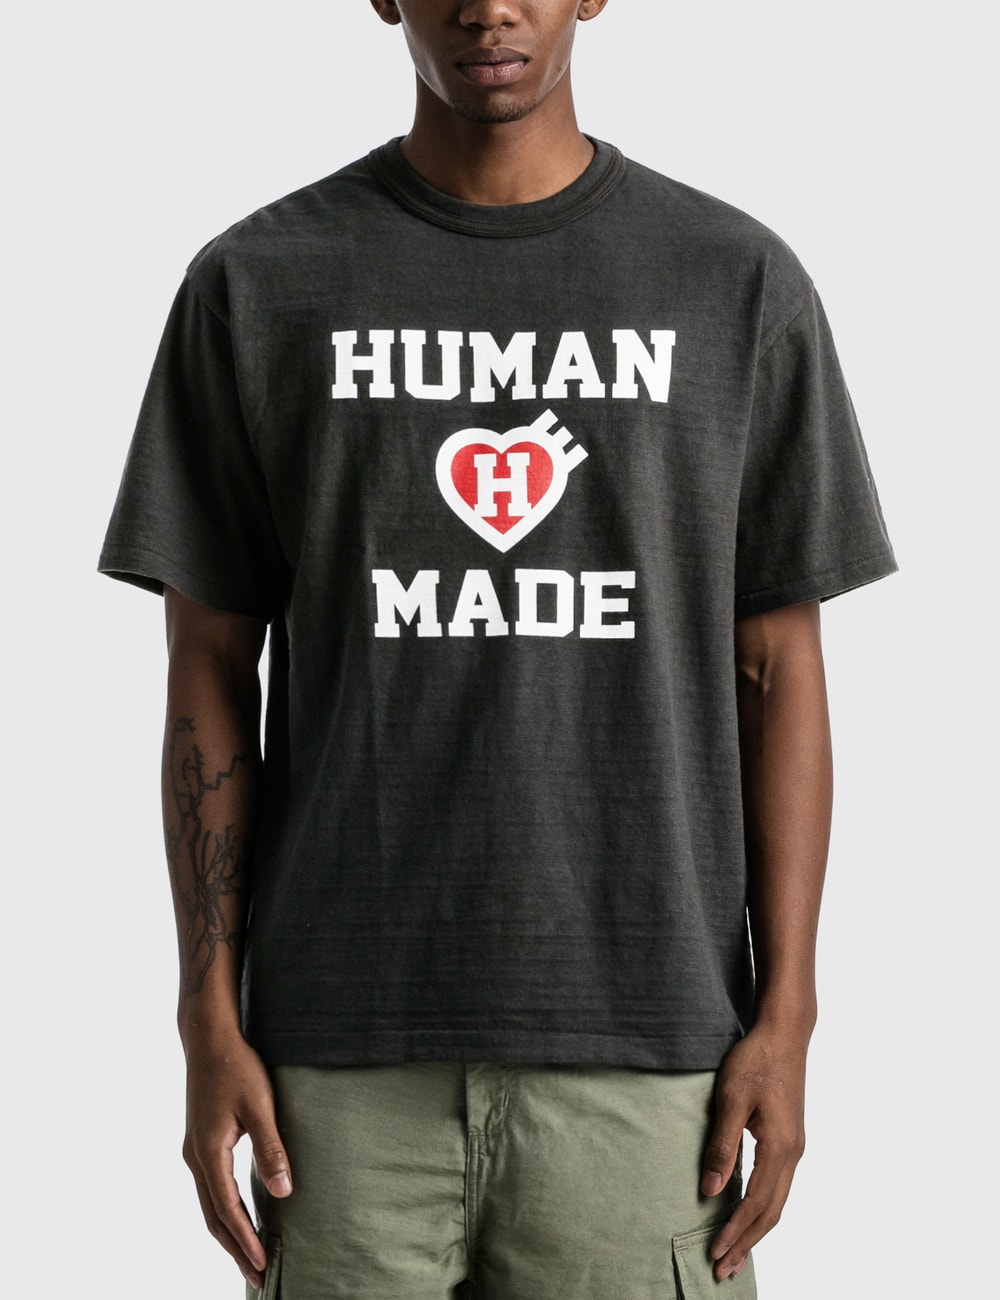 Human Made - T-shirt #2203 | HBX